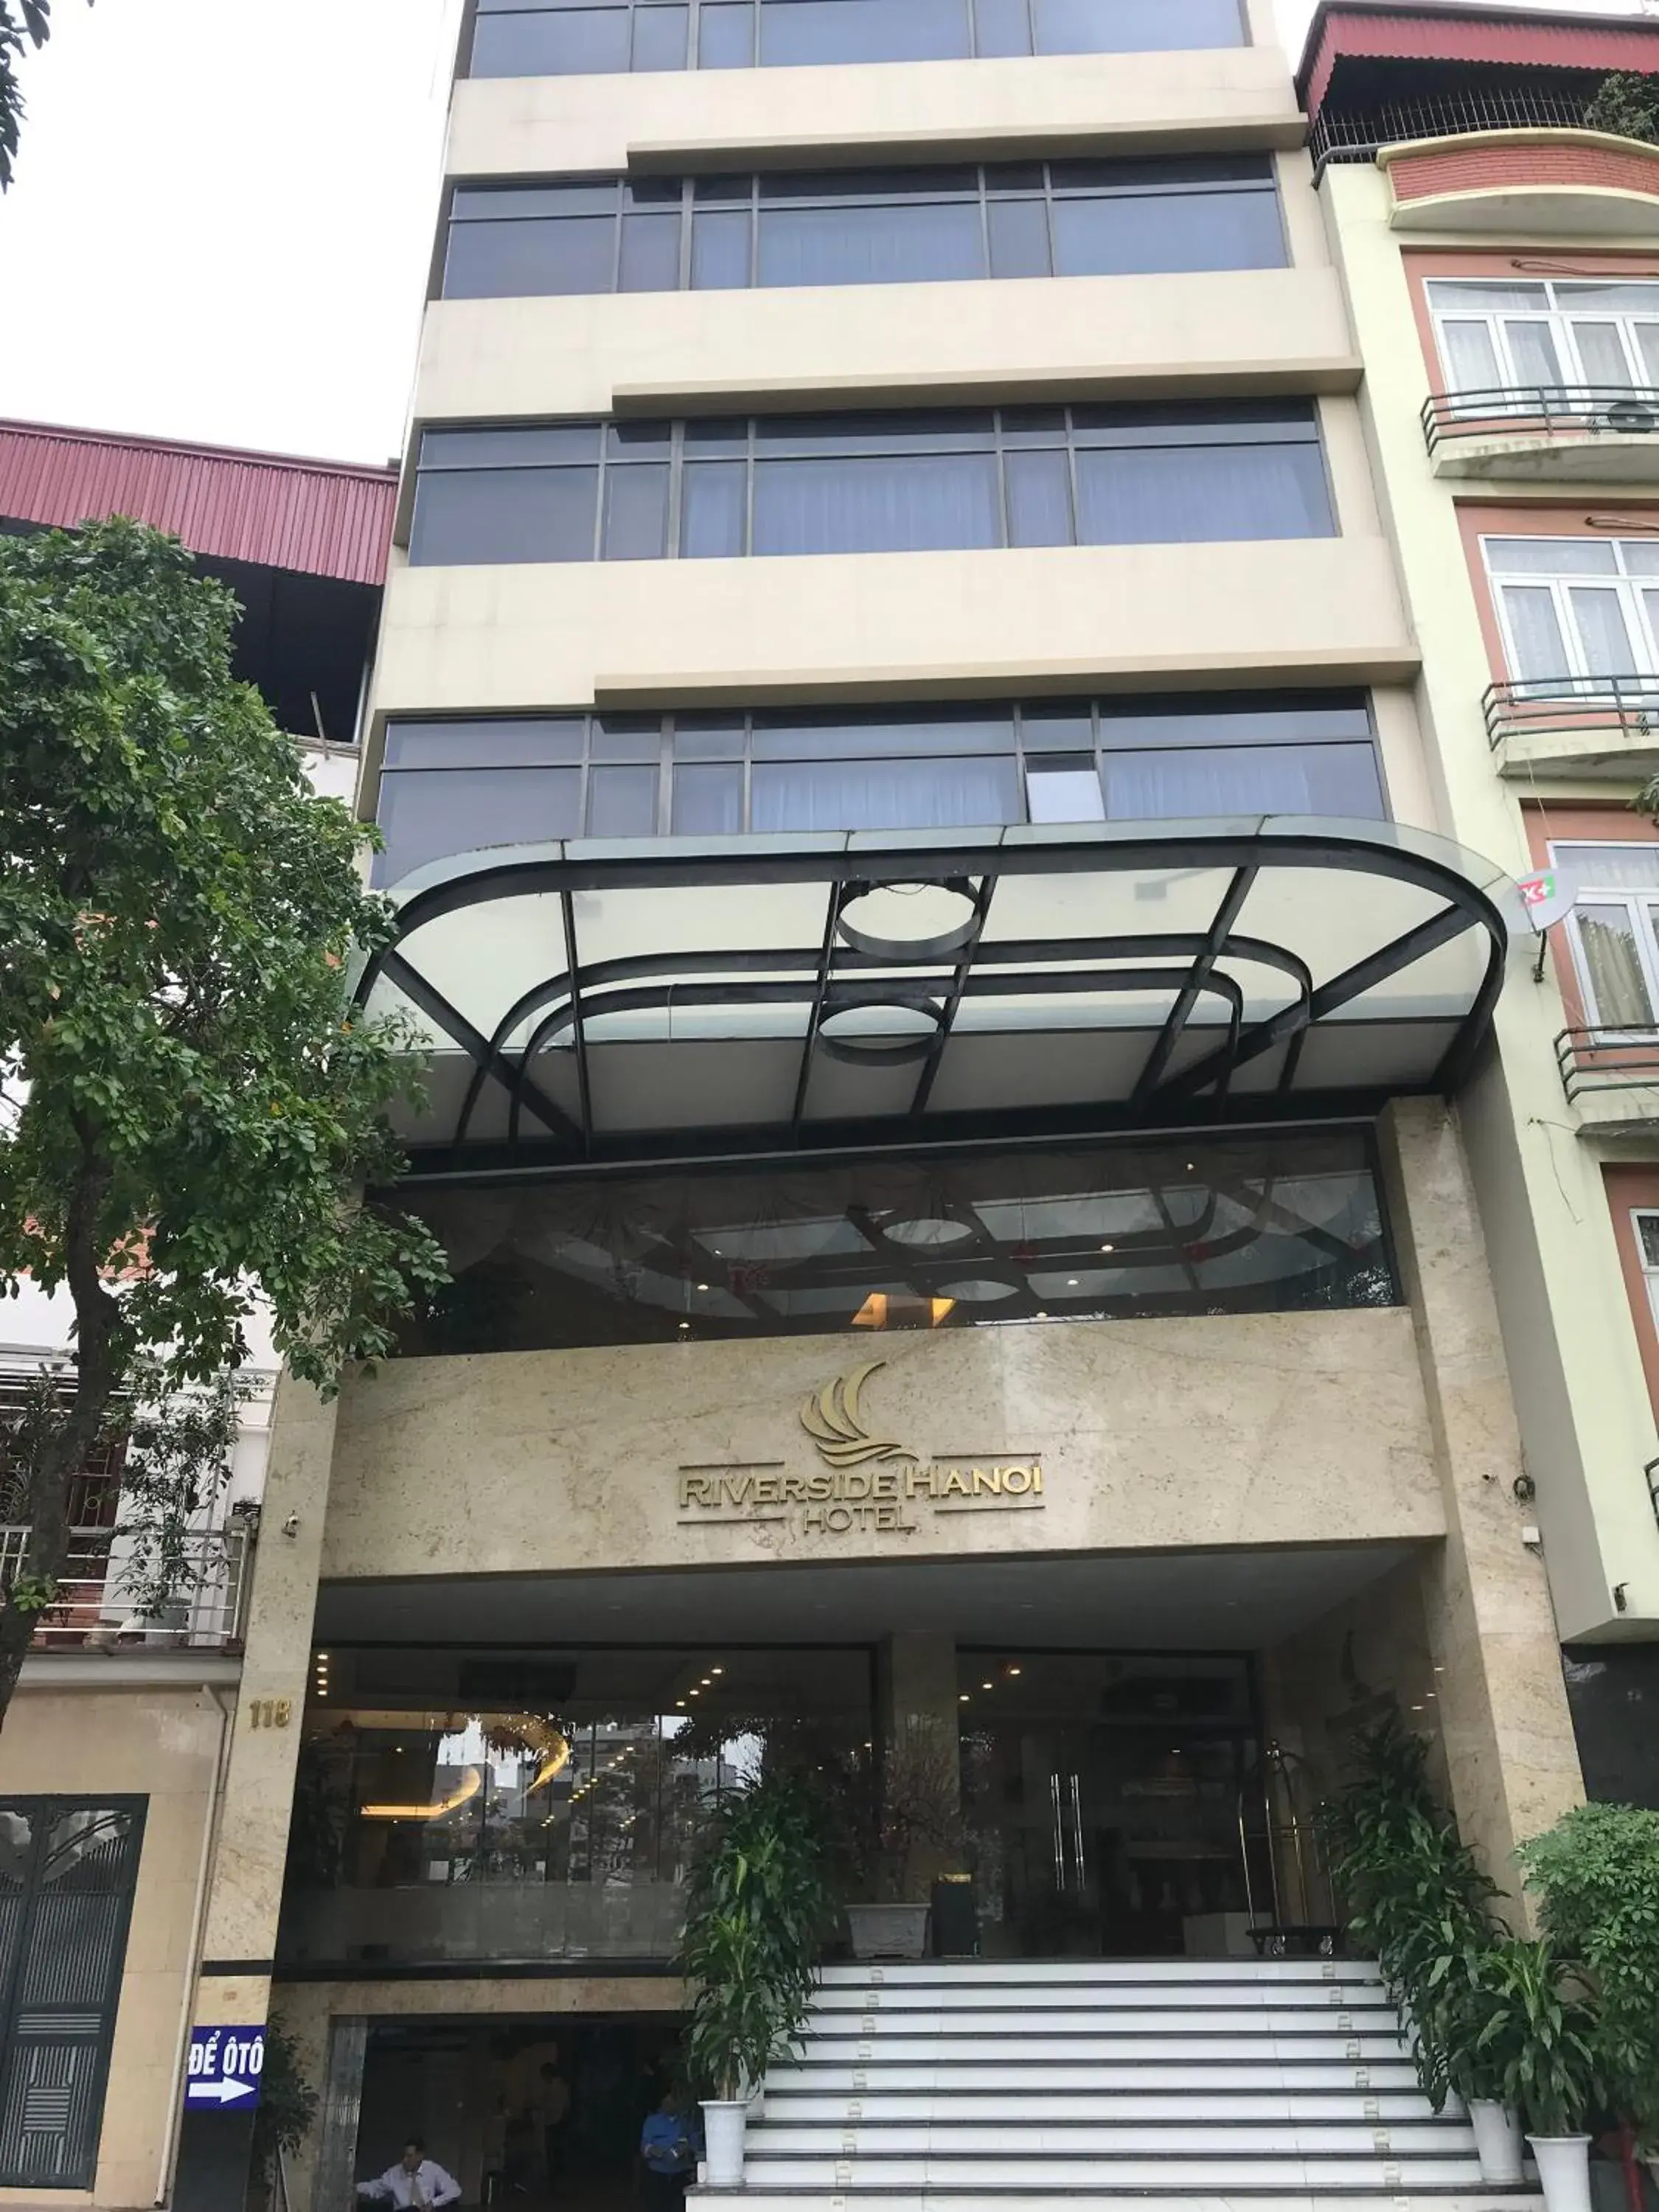 Property Building in Riverside Hanoi Hotel